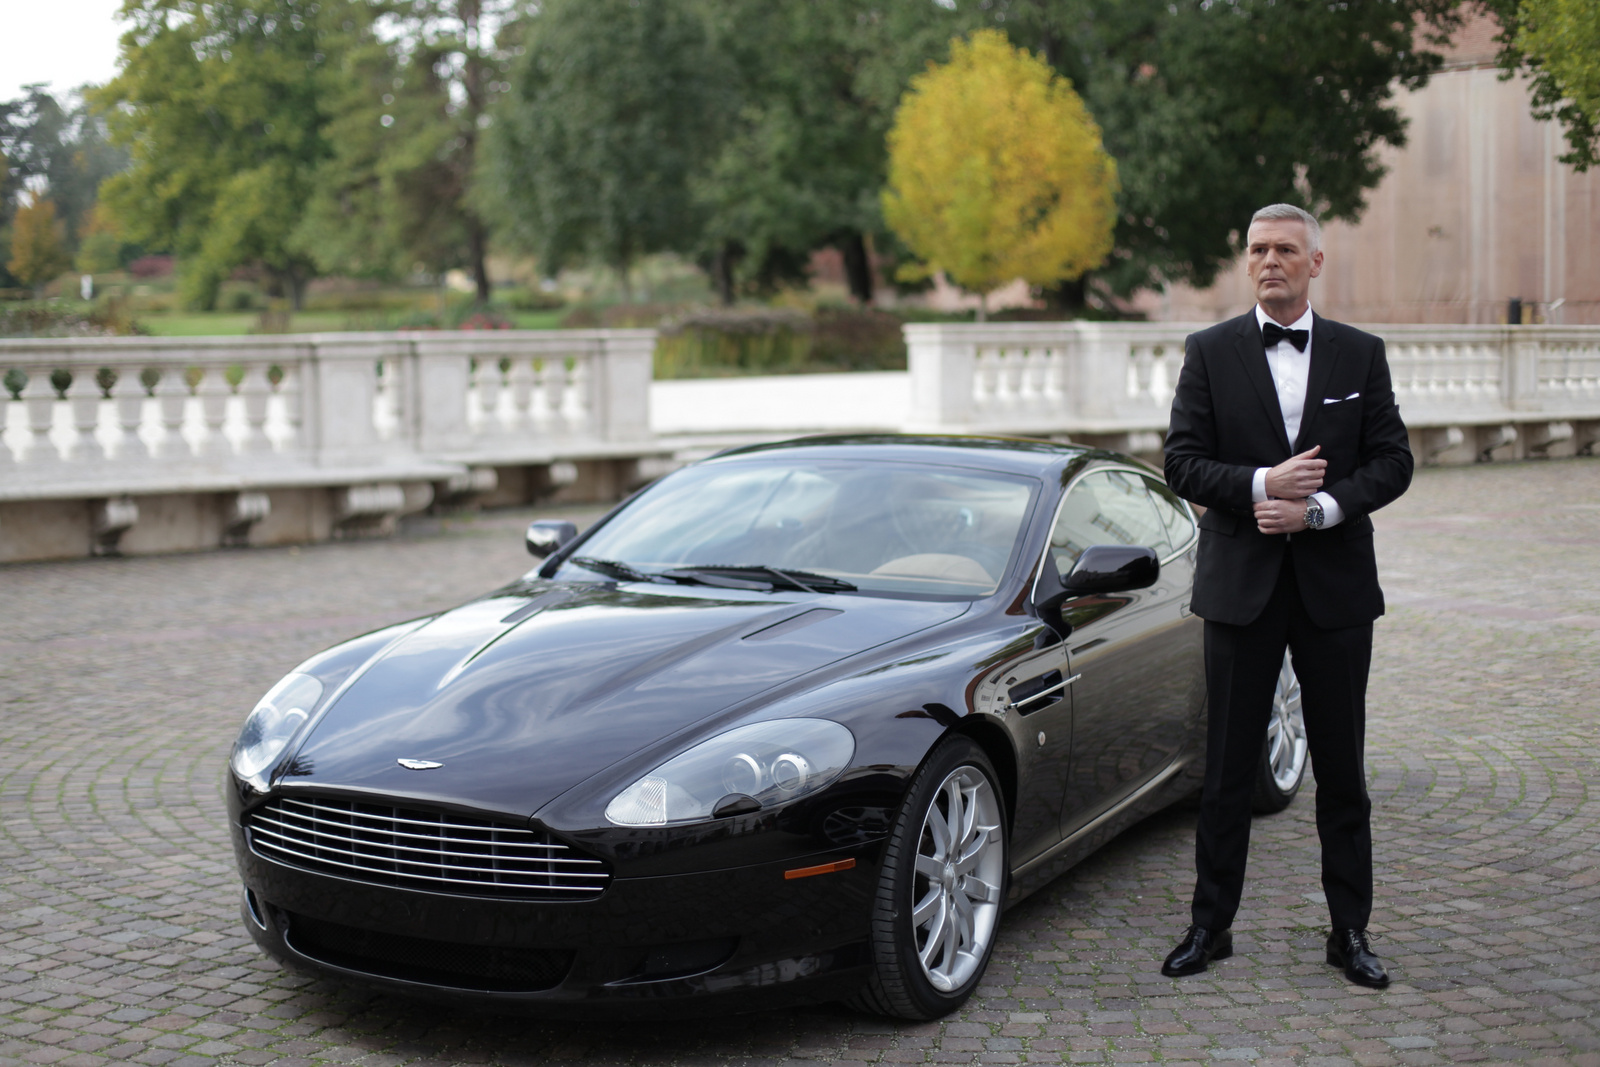 Tordai István as James Bond